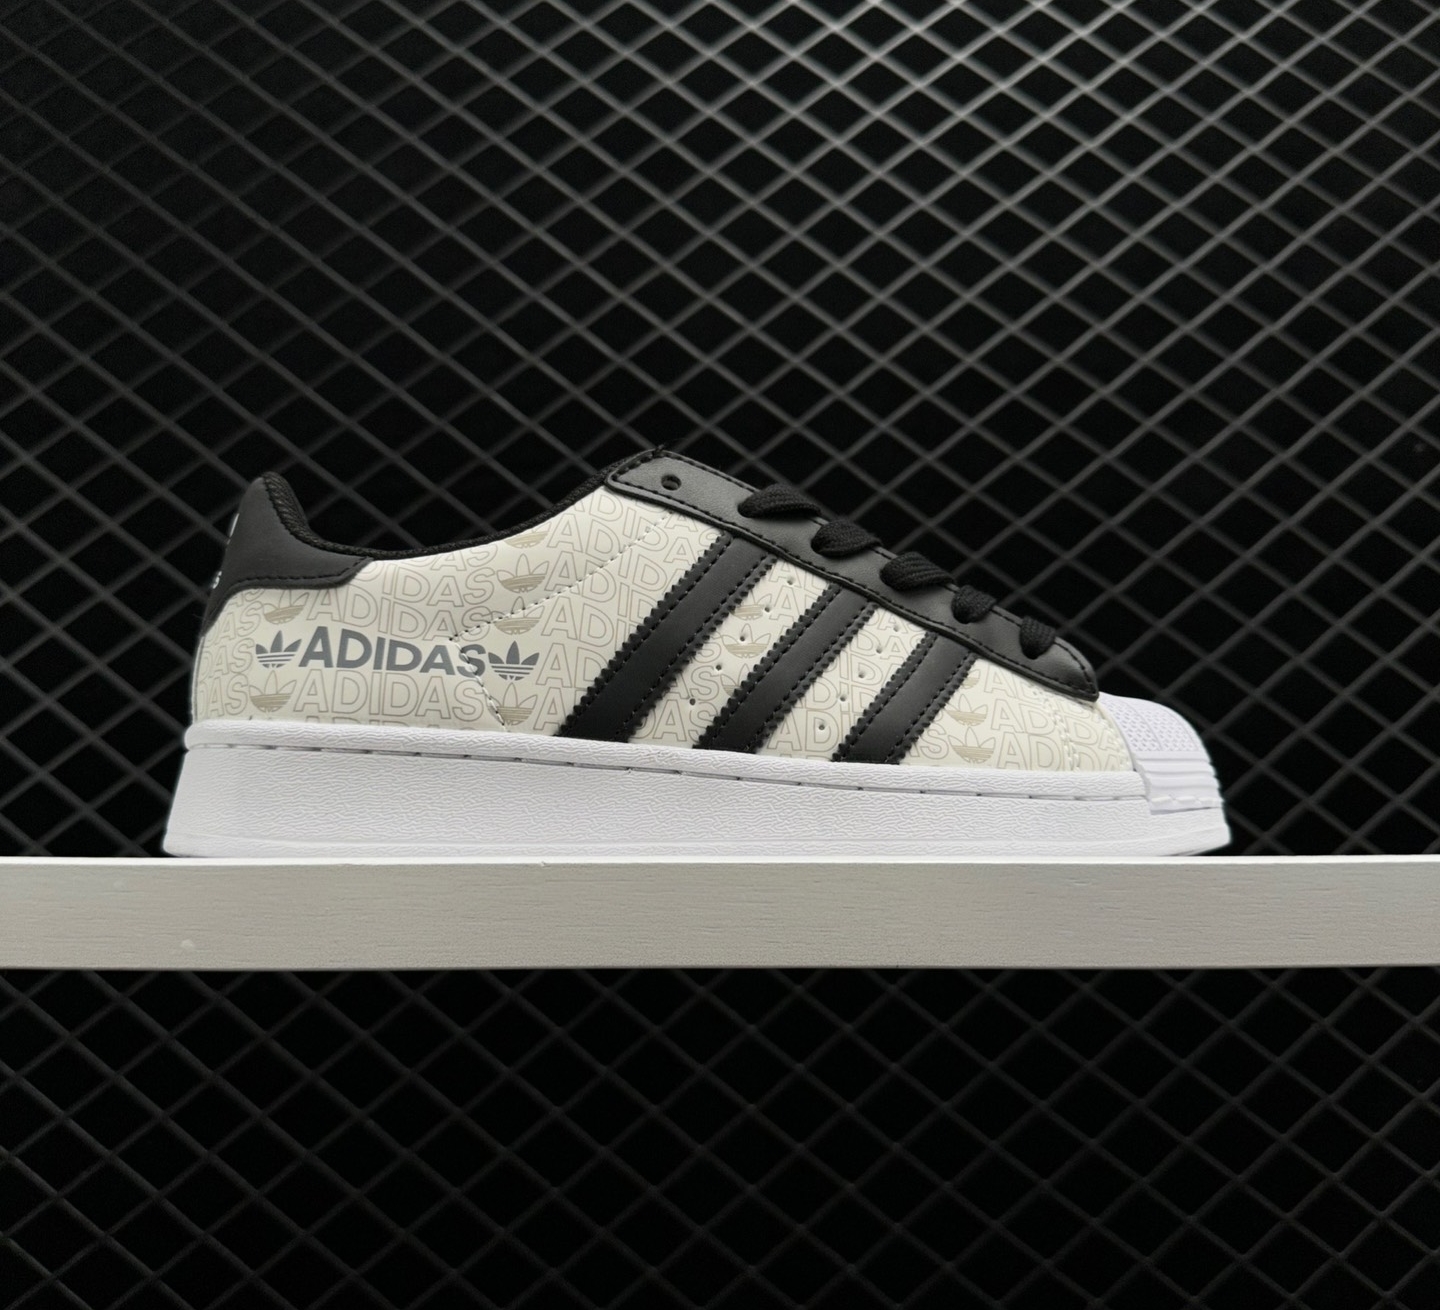 Adidas Superstar Reflective Allover Logo White Black - GW7254